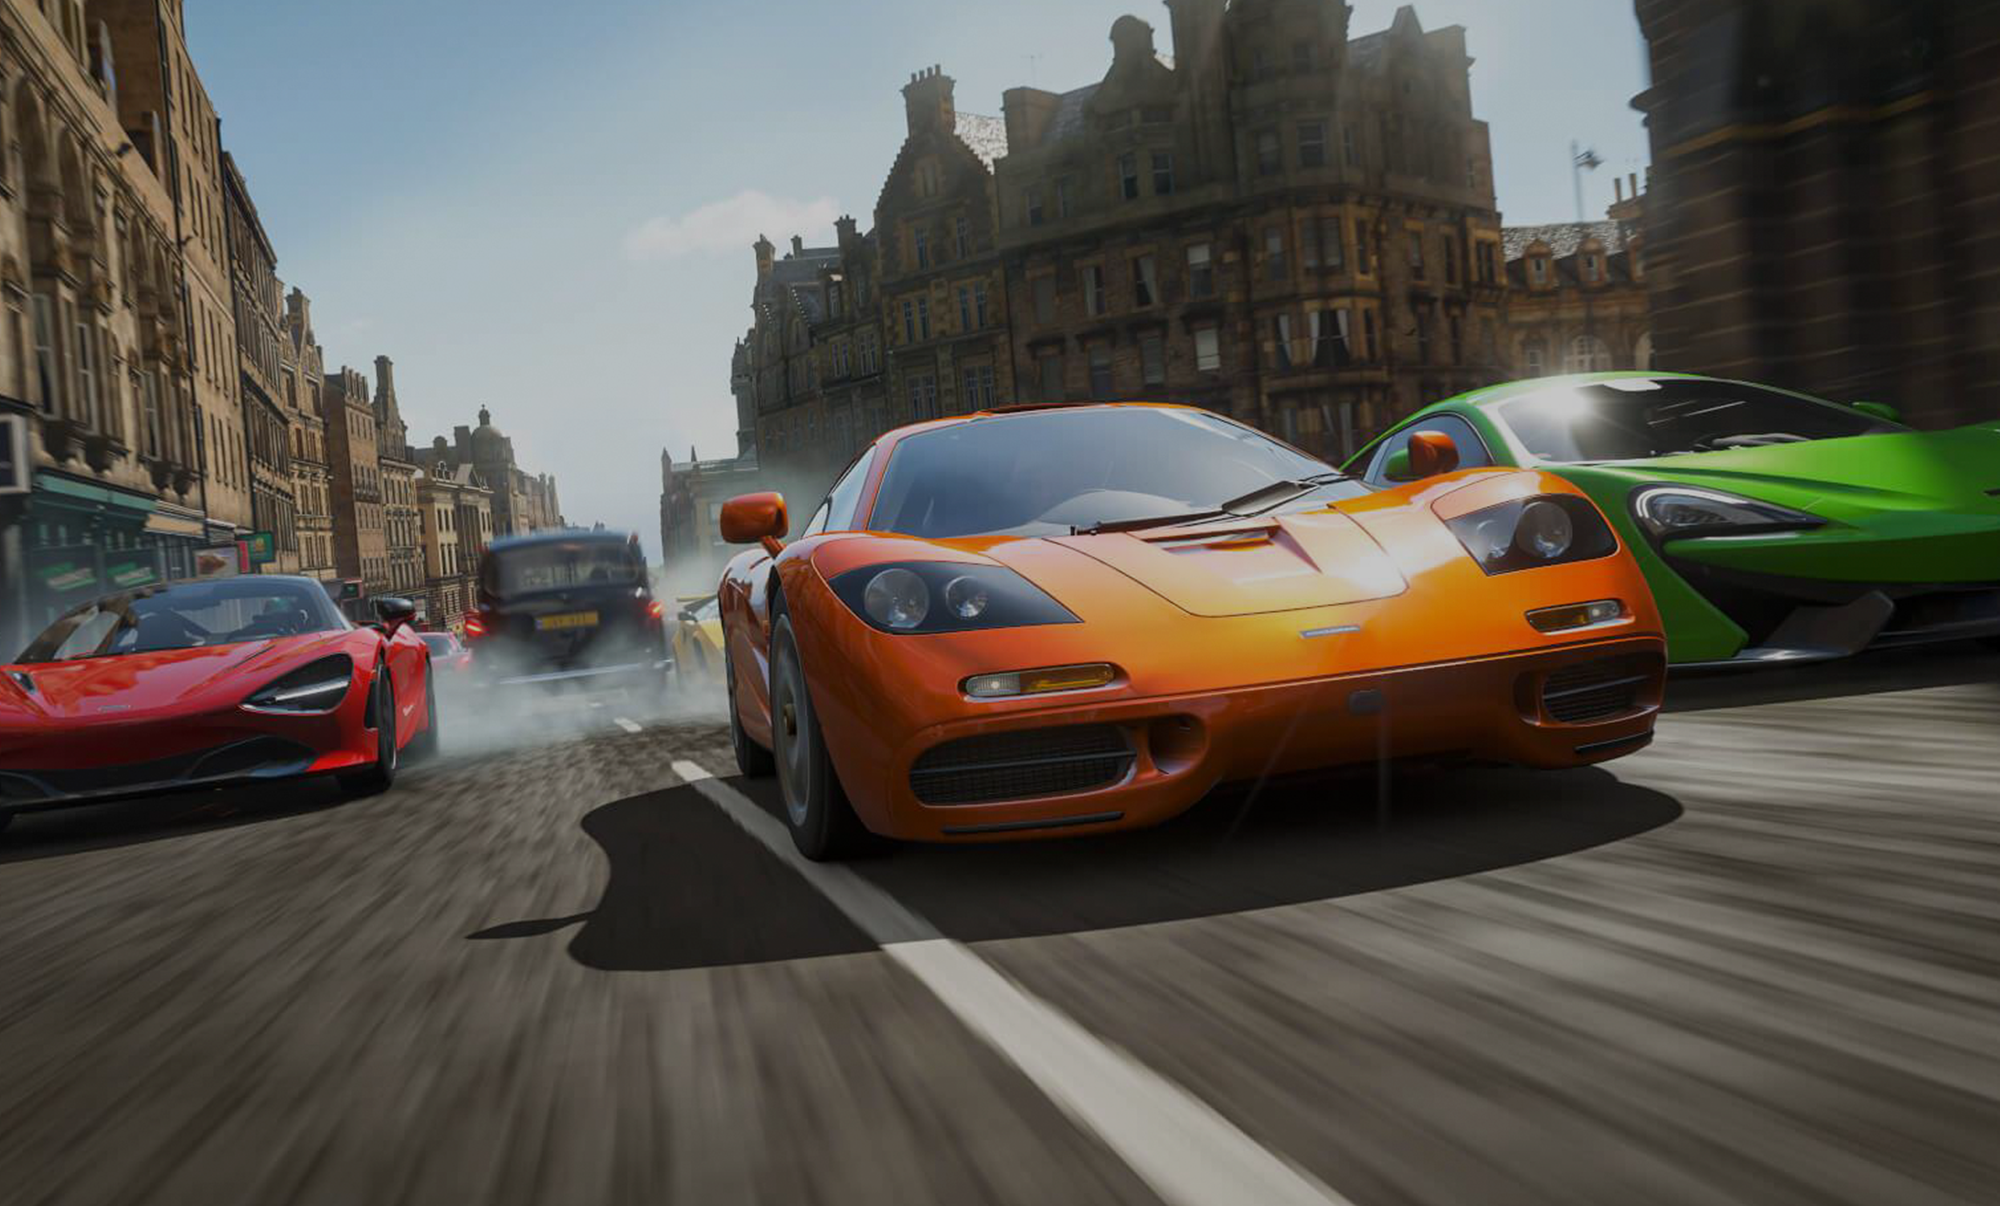 Os 10 Melhores Jogos de Corrida de Carros do Xbox 360 